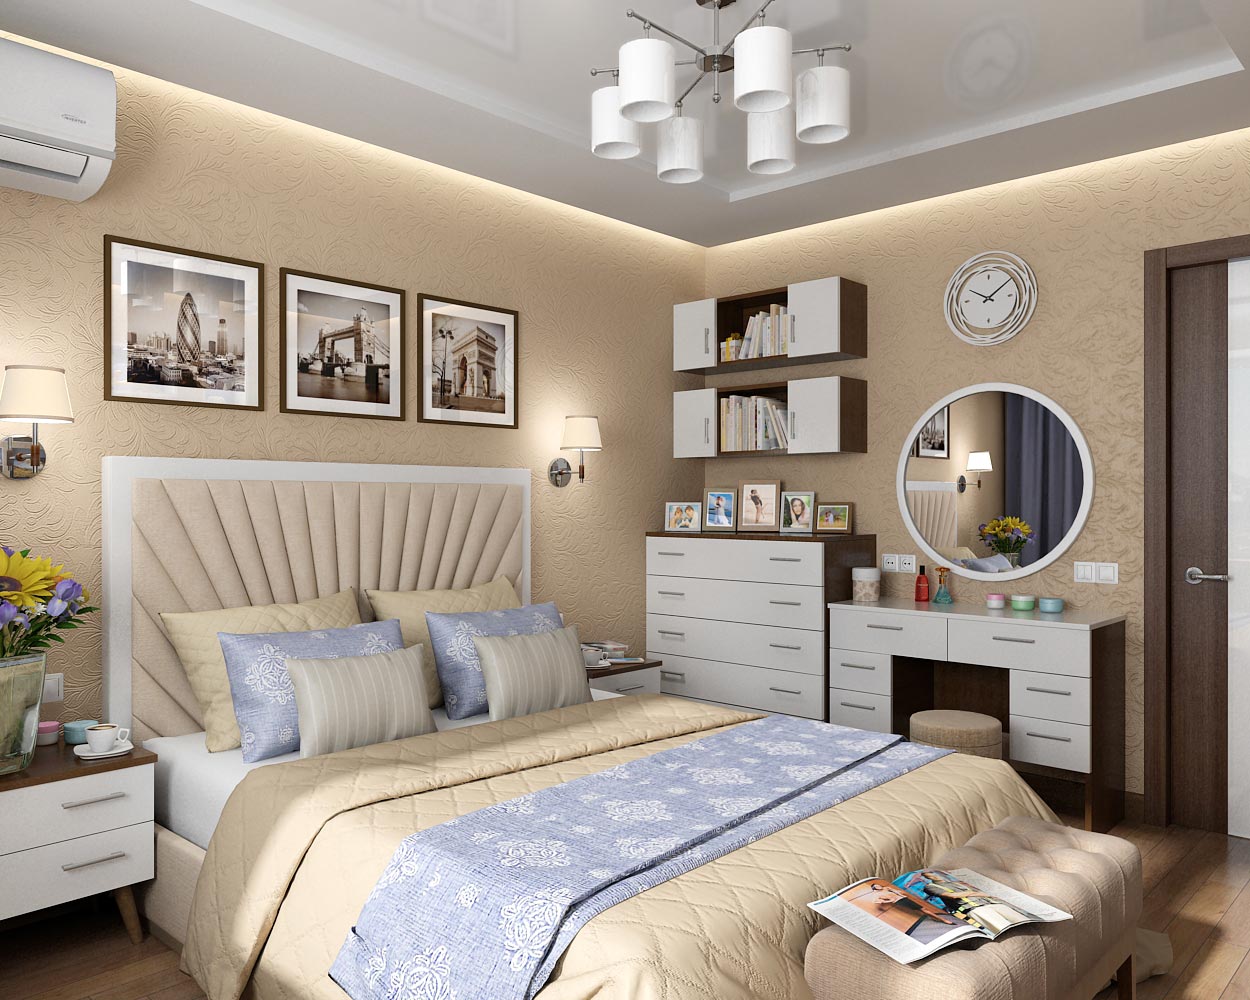 Chernigov'da bir apartman dairesinde bir yatak odası için iç tasarım projesi in 3d max vray 1.5 resim